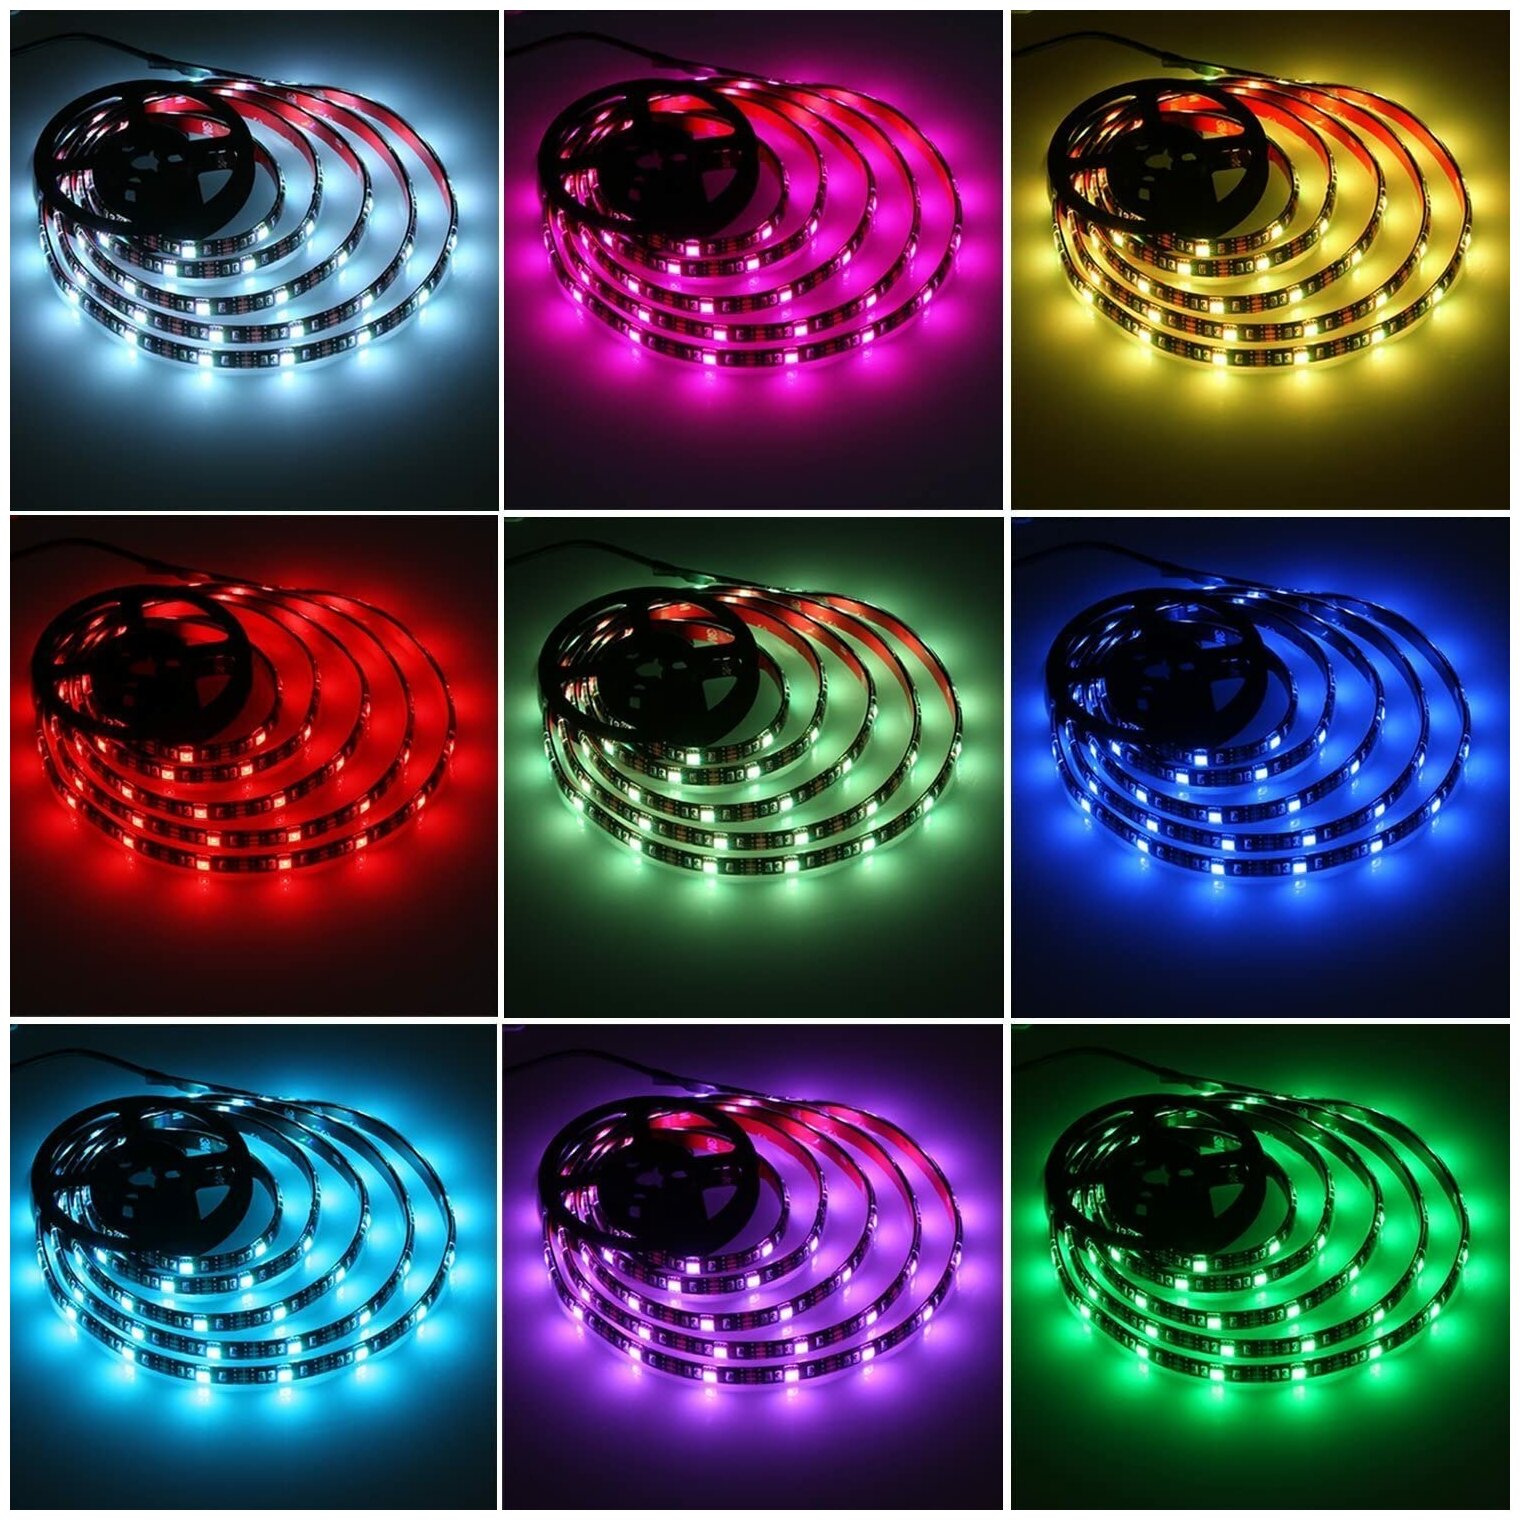 Светодиодная LED лента SimpleShop c различными режимами работы, многоцветная RGB лента, 5м.